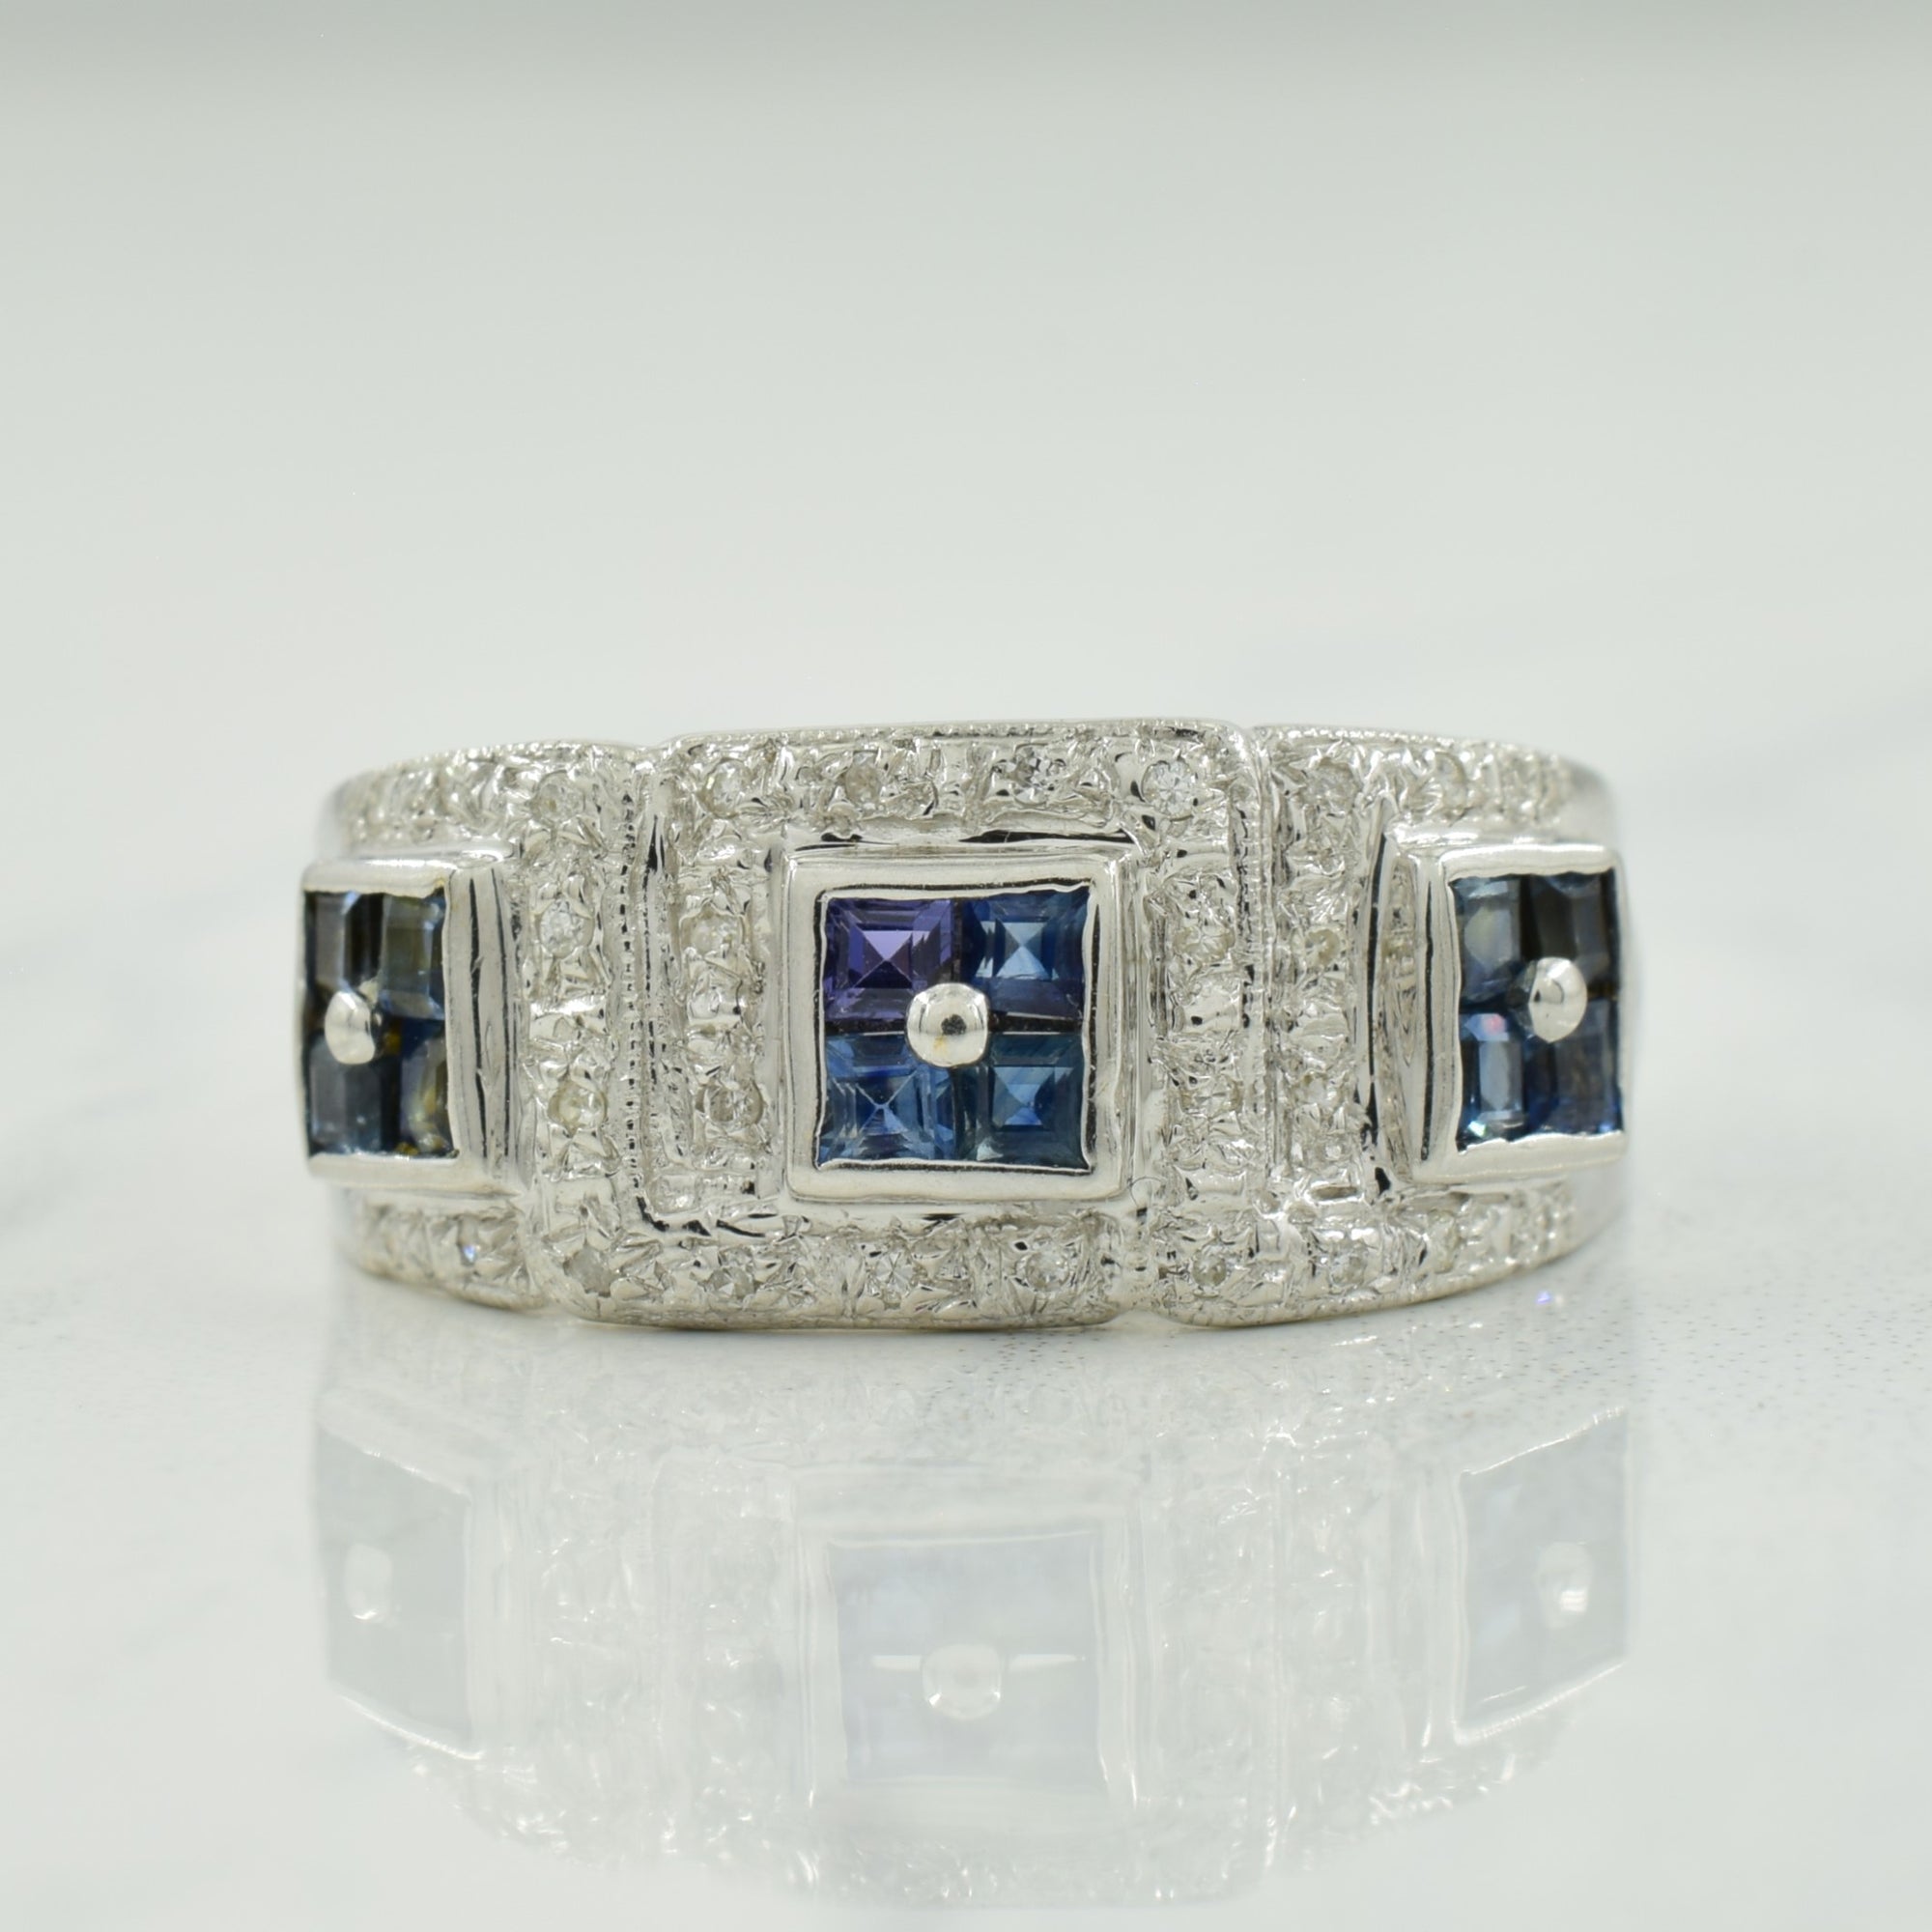 Blue Sapphire & Diamond Ring | 0.45ctw, 0.09ctw | SZ 8 |